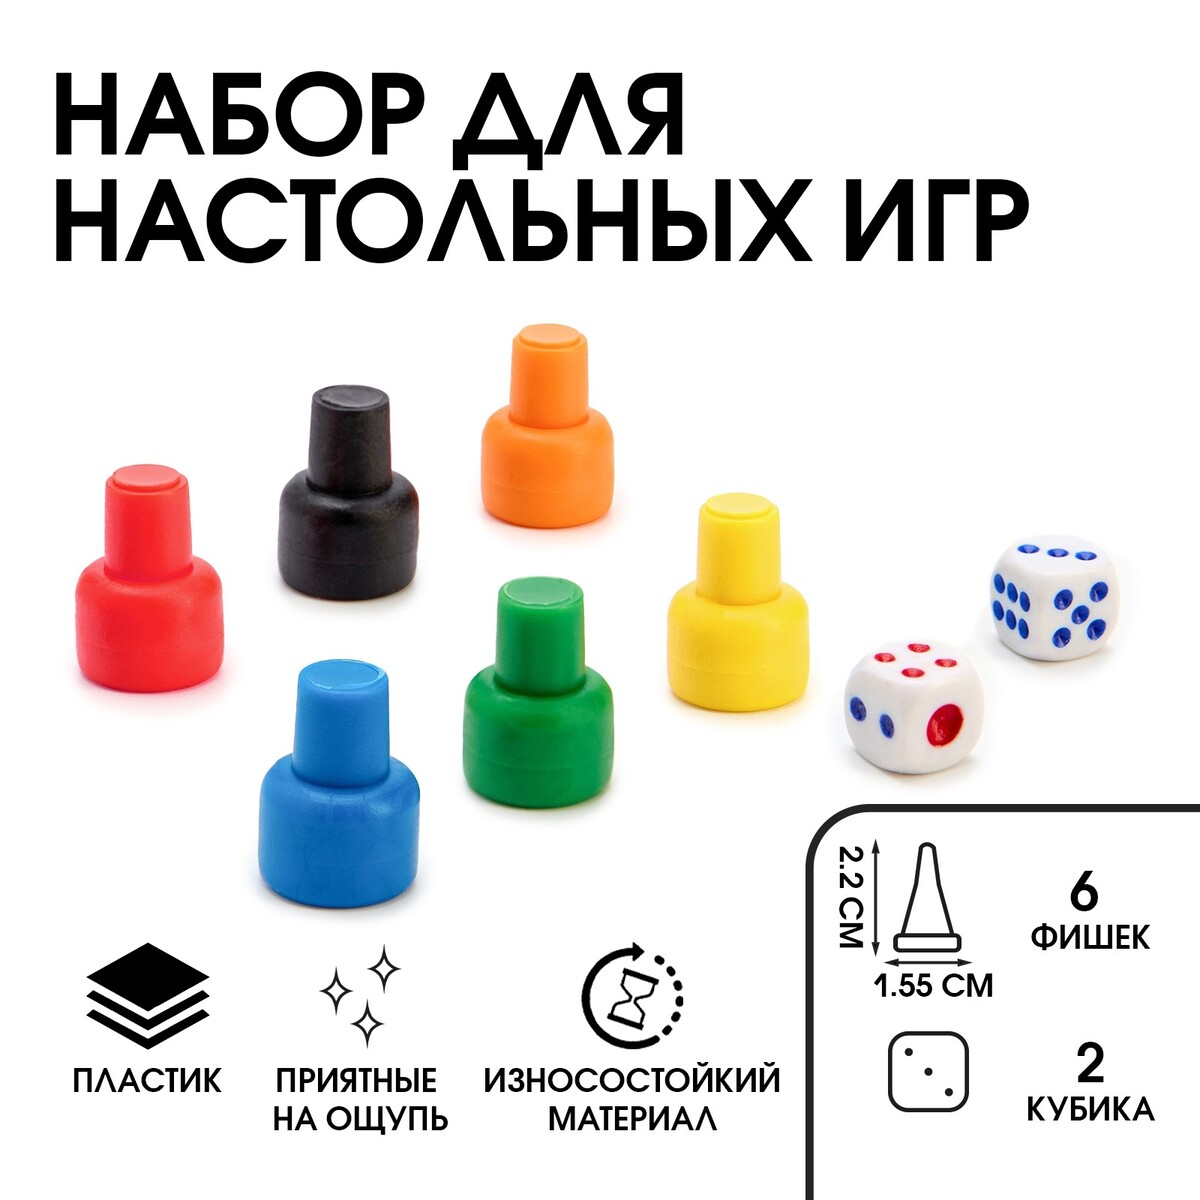 Набор для настольных игр (6 фишек, 2 кубика) No brand, цвет разноцветный 02562176 - фото 1